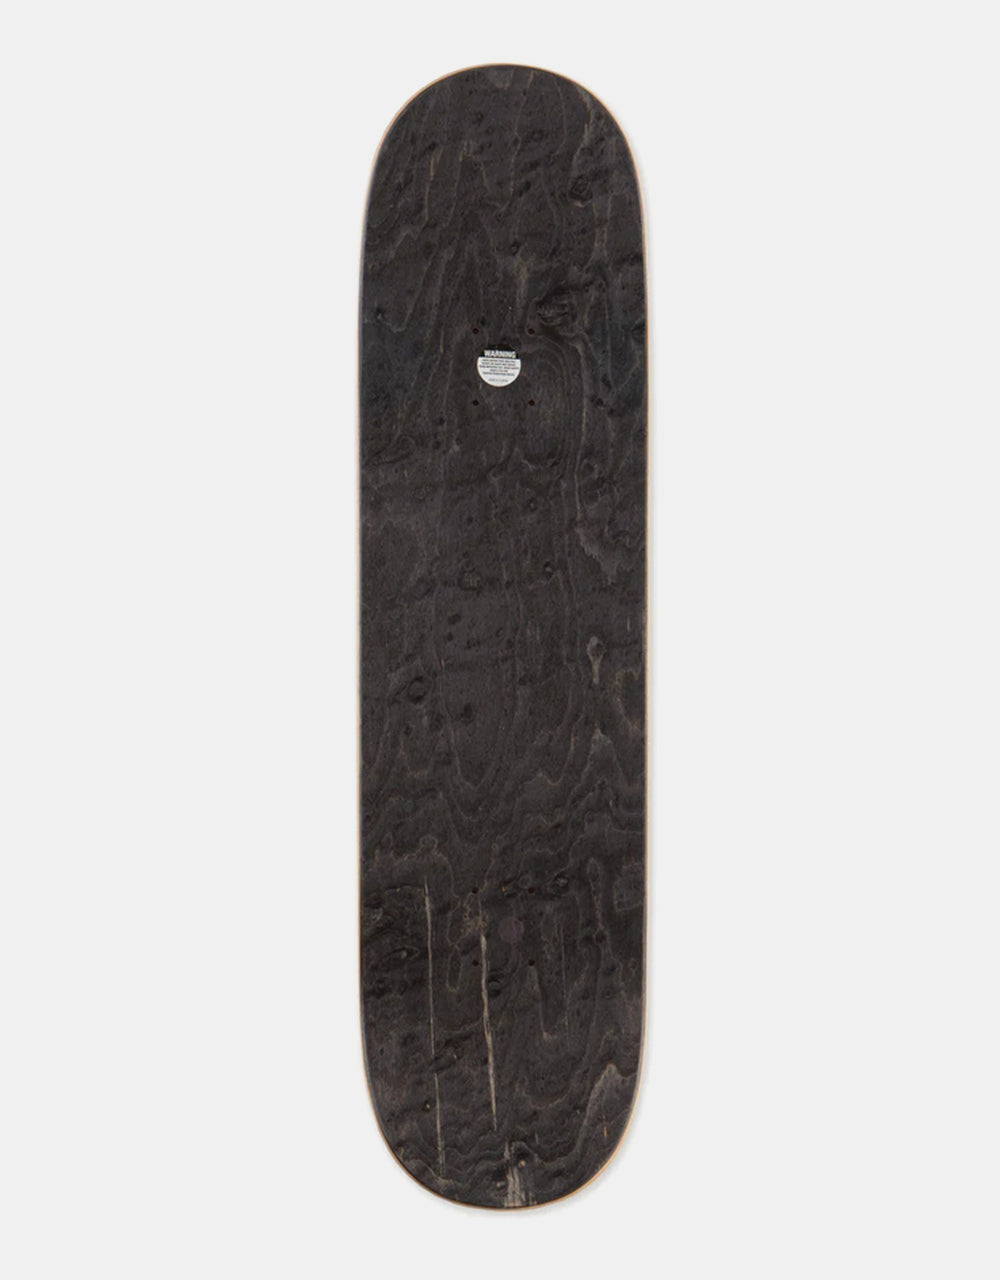 SOVRN Midi Skateboard Deck - 8.5"